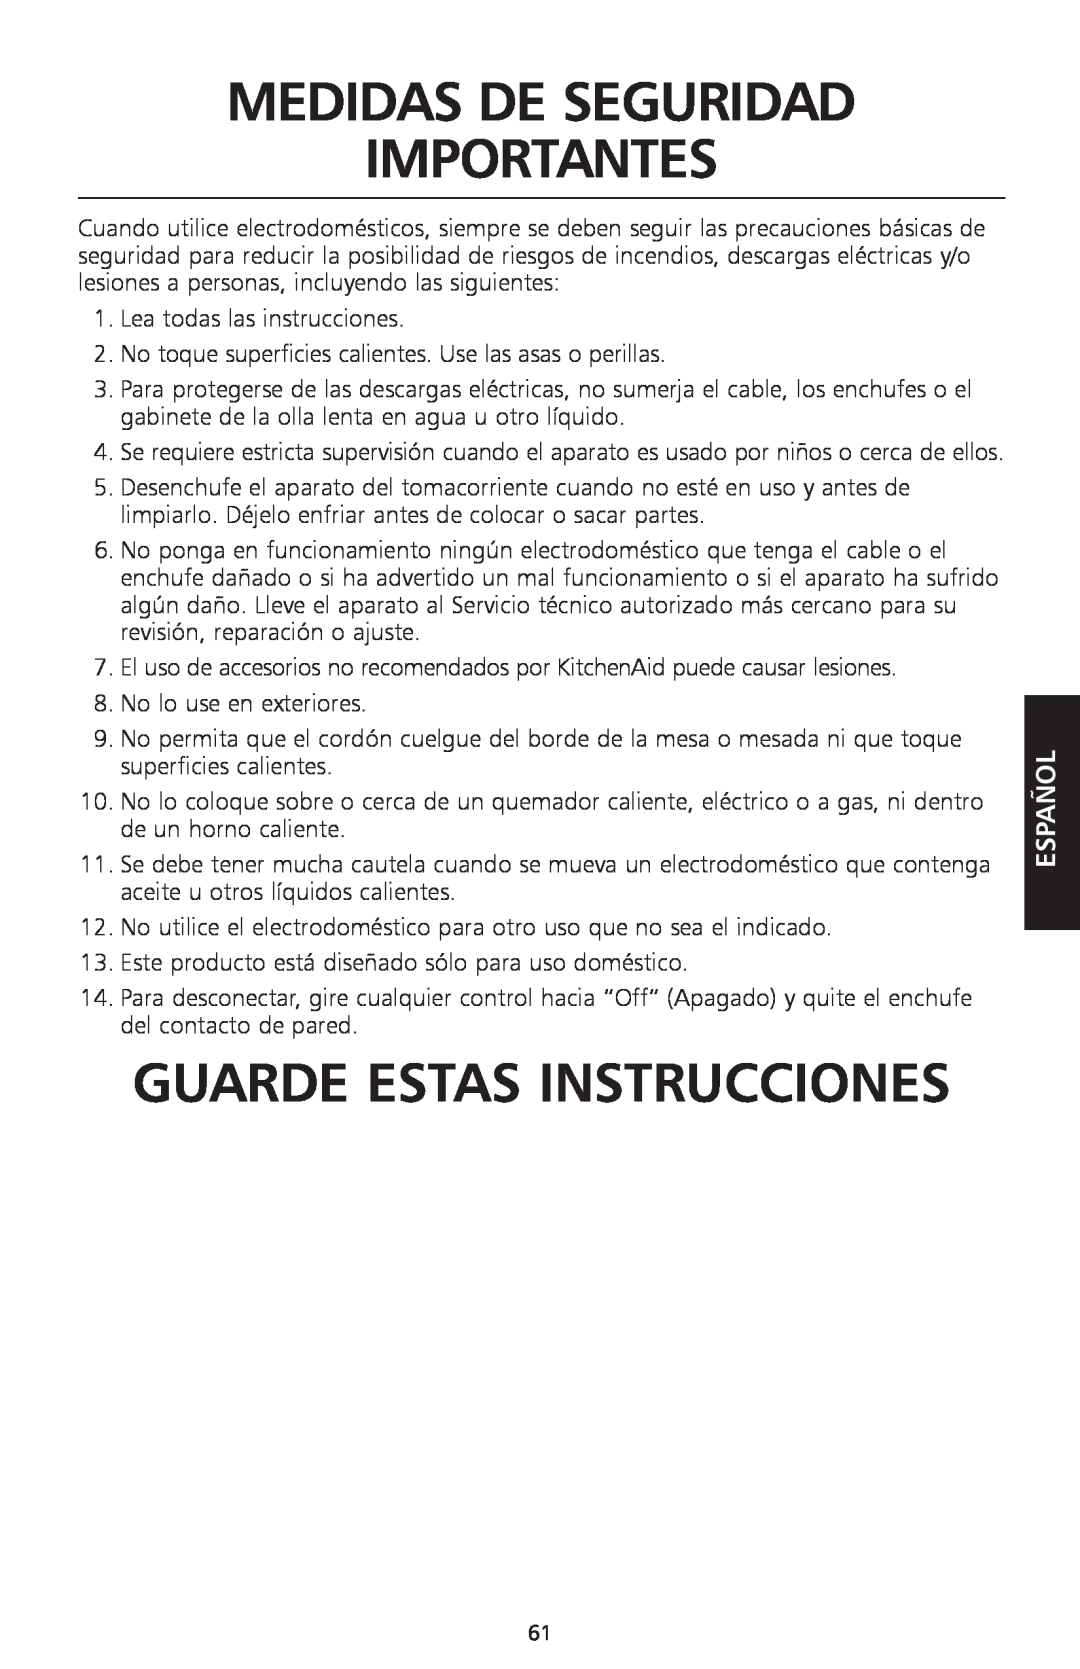 KitchenAid KSC700 manual Medidas De Seguridad Importantes, Guarde Estas Instrucciones, Español 